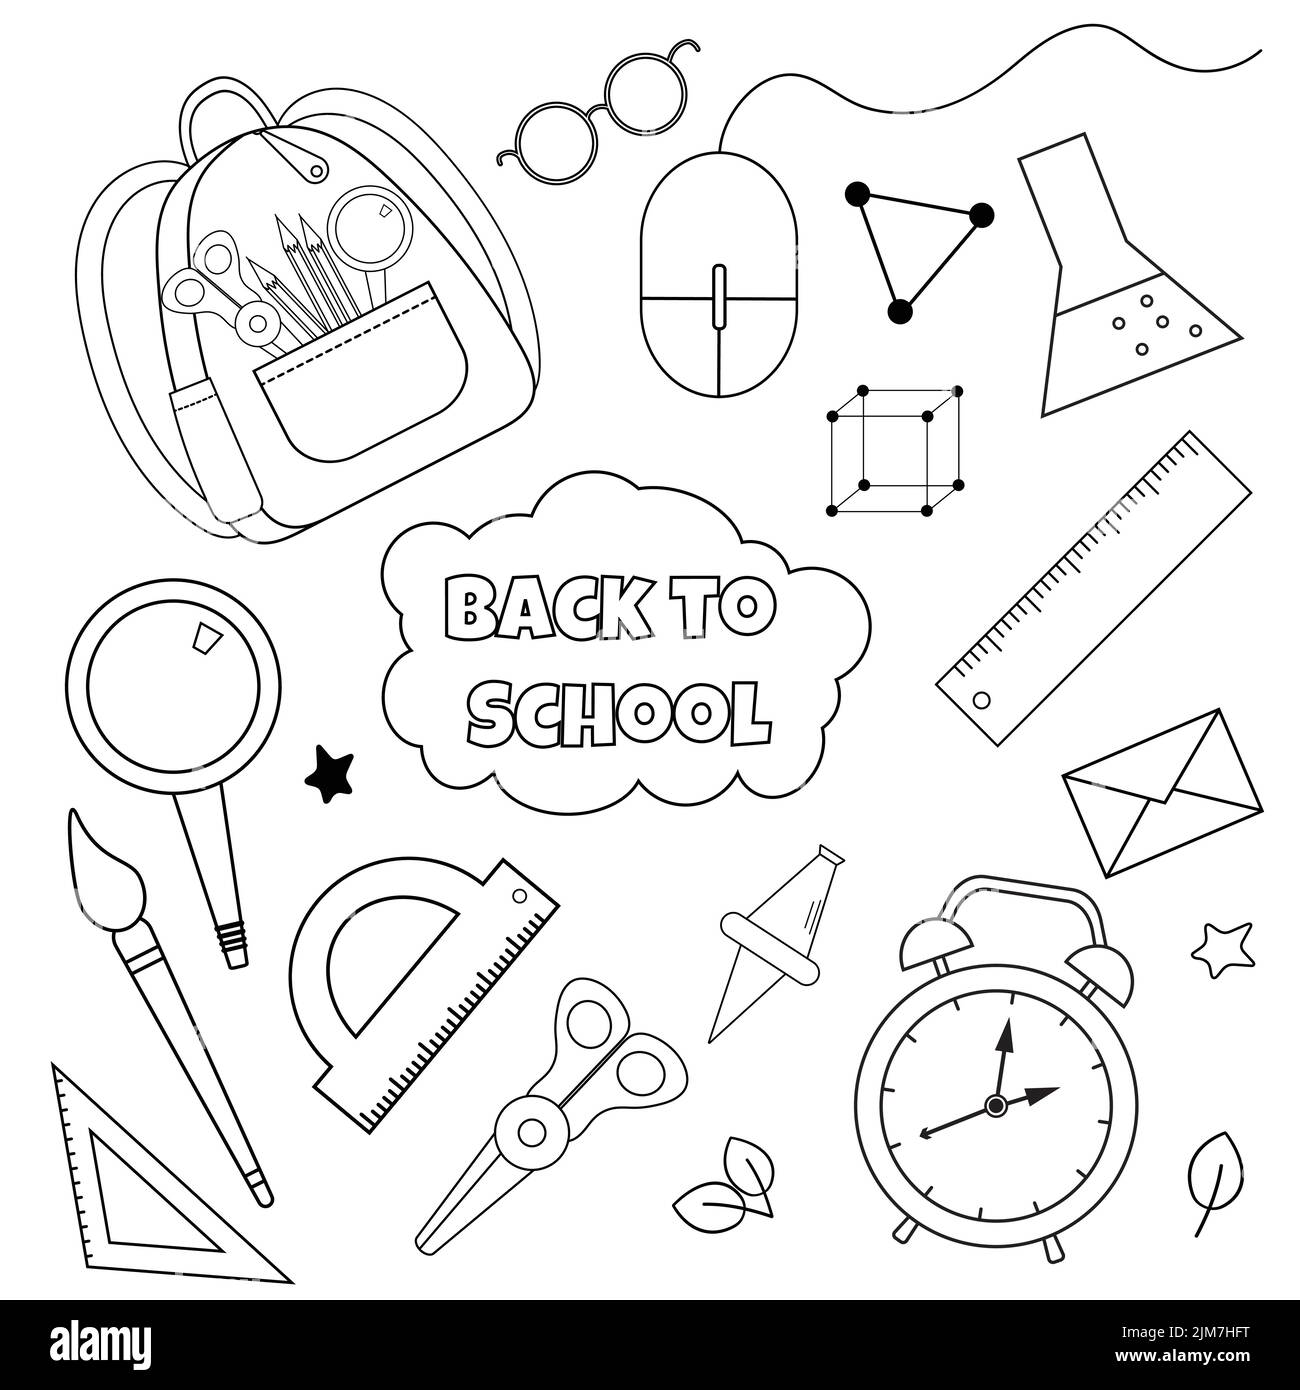 School vector illustration Stock Vector